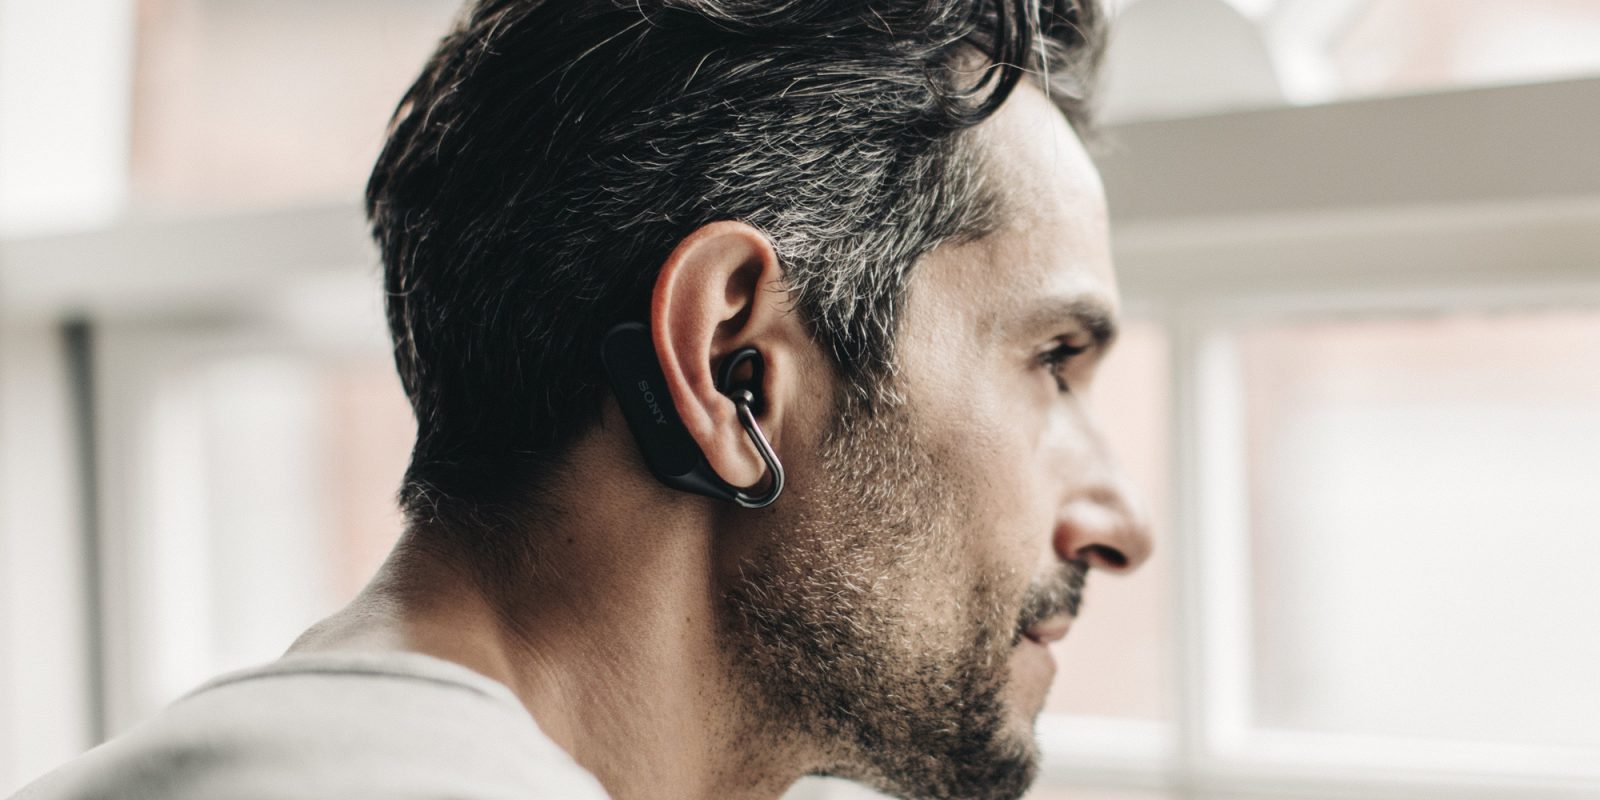 سماعات Xperia Ear Duo أصبح بإمكانها الآن قراءة إشعاراتك على منصتي الأندرويد و iOS